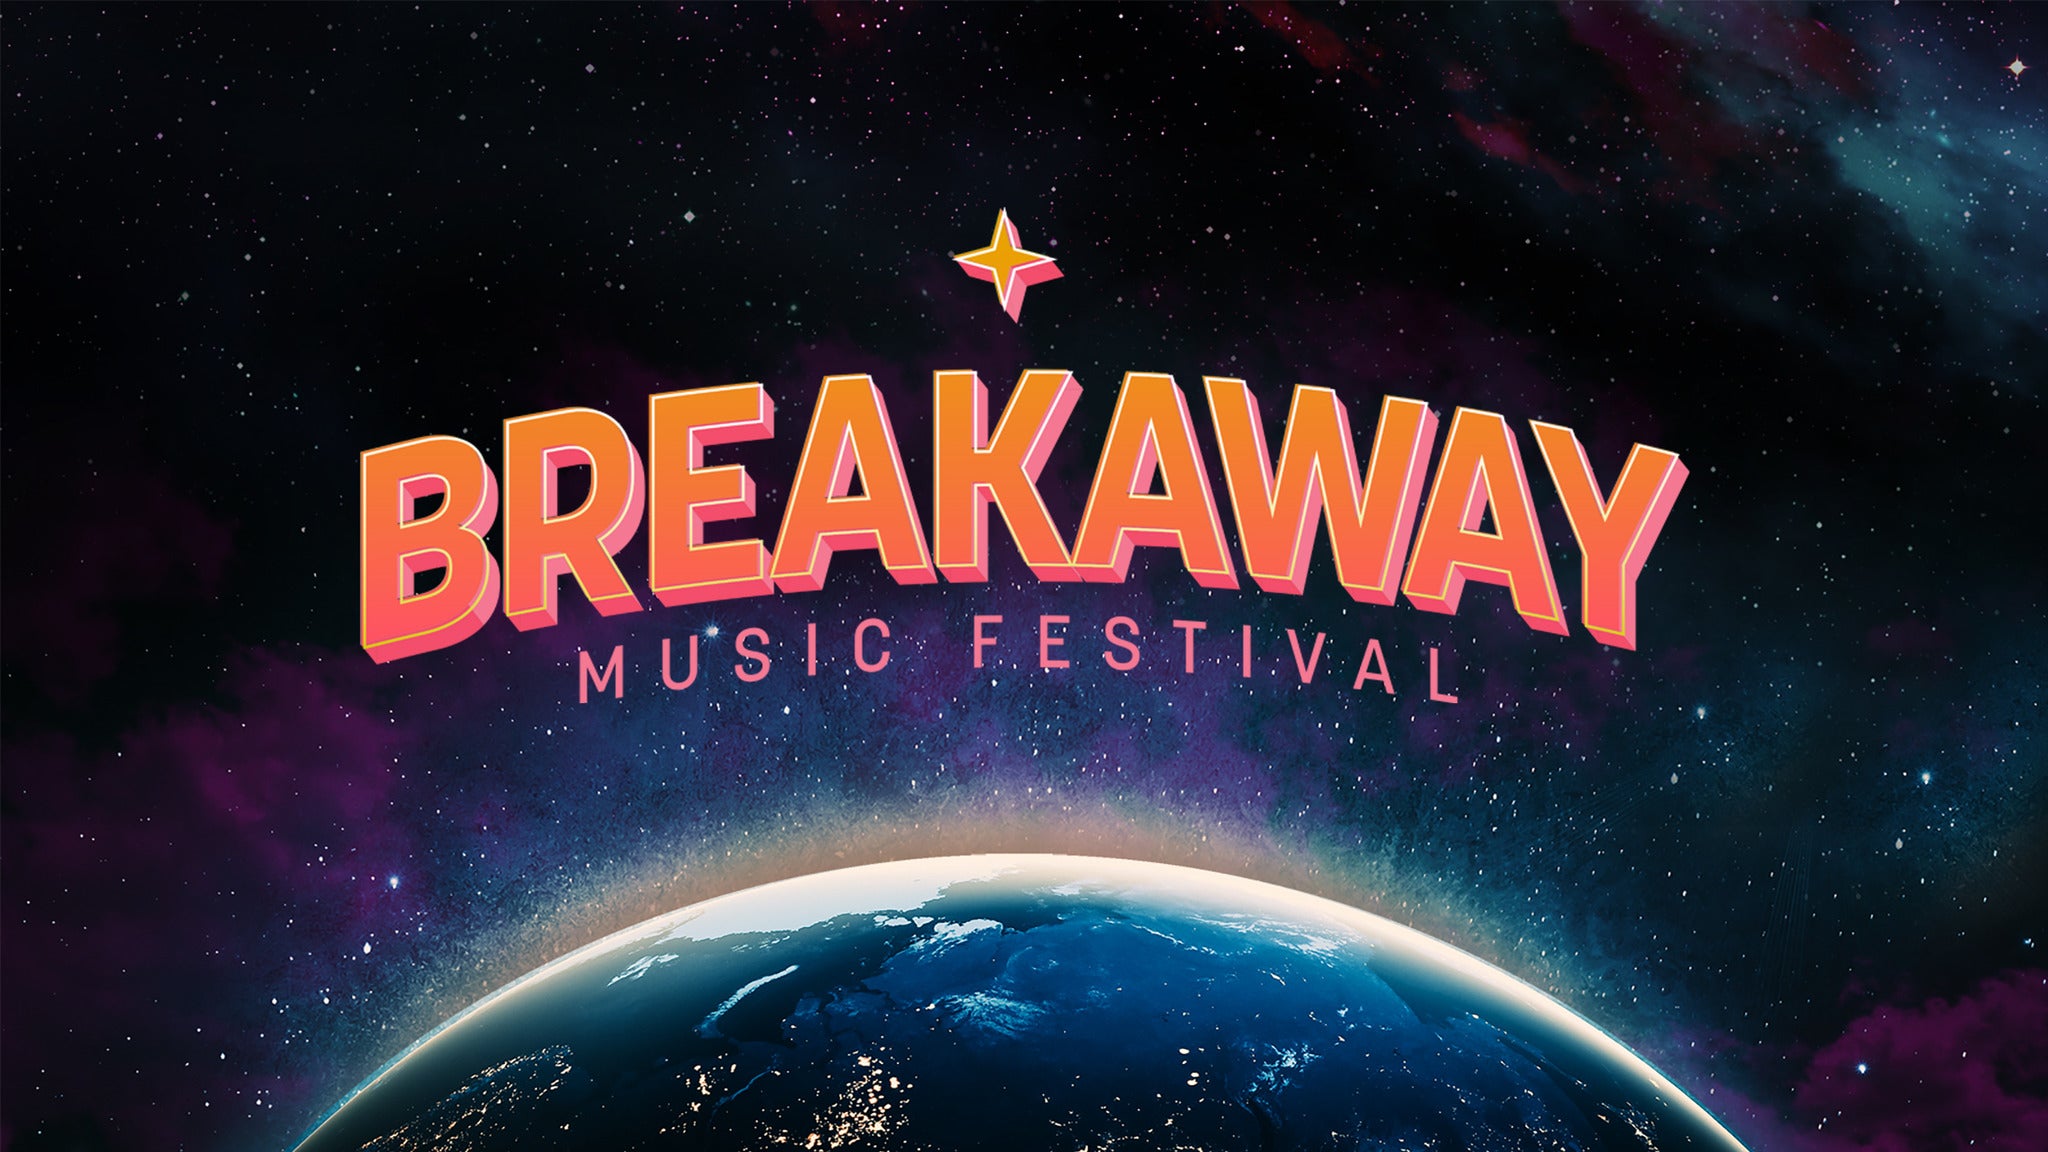 Breakaway Music Festival - Charlotte presale information on freepresalepasswords.com